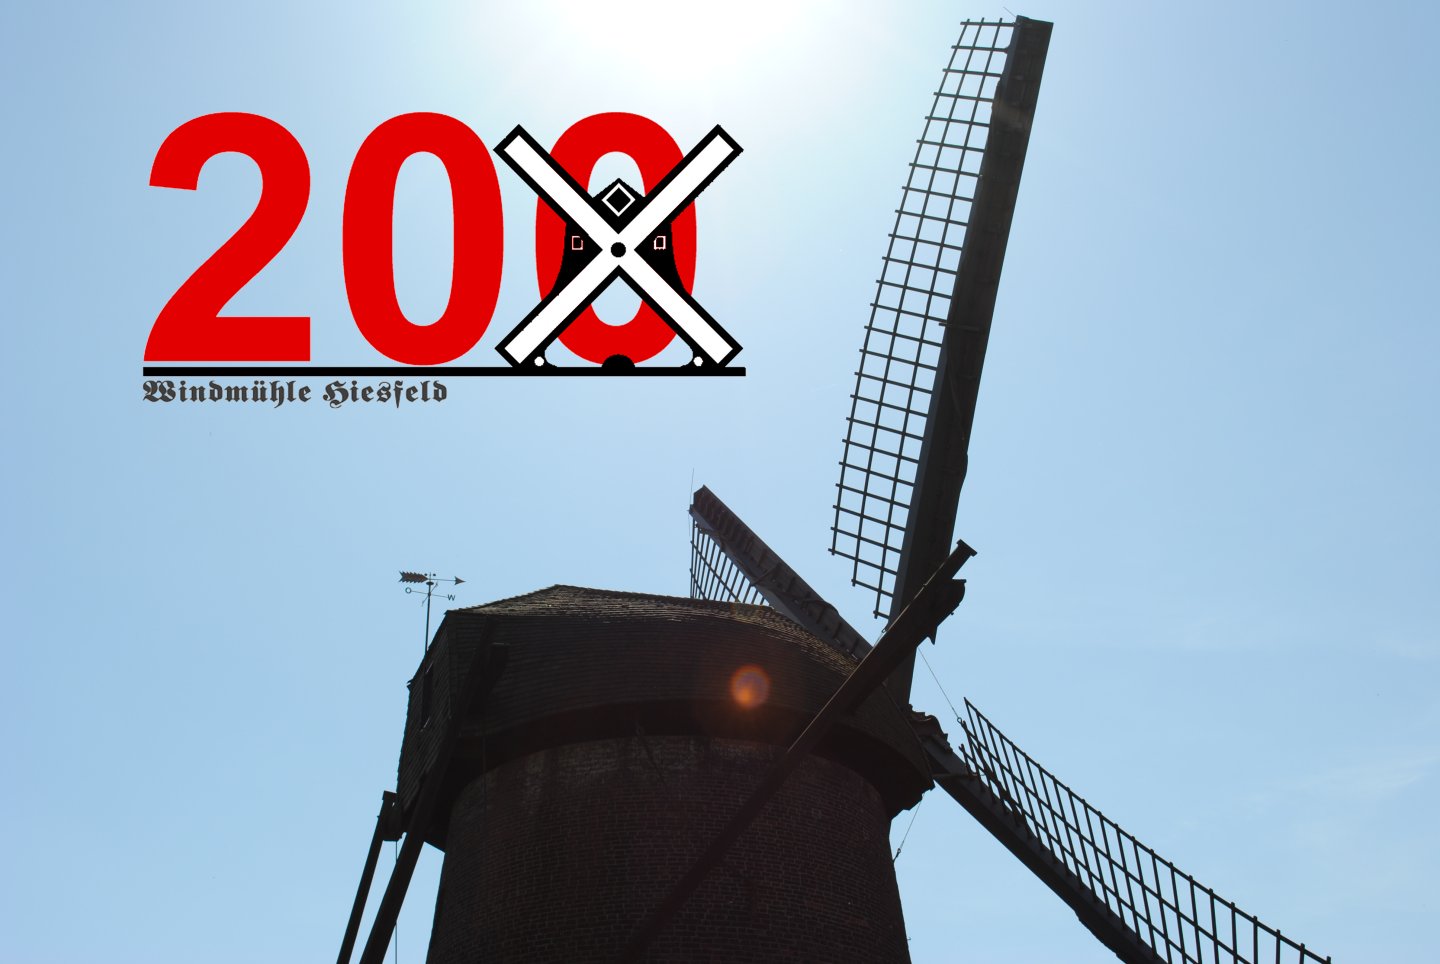 Die Windmühle wird 200 Jahre alt - Beginn der Inforeihe mit Logo